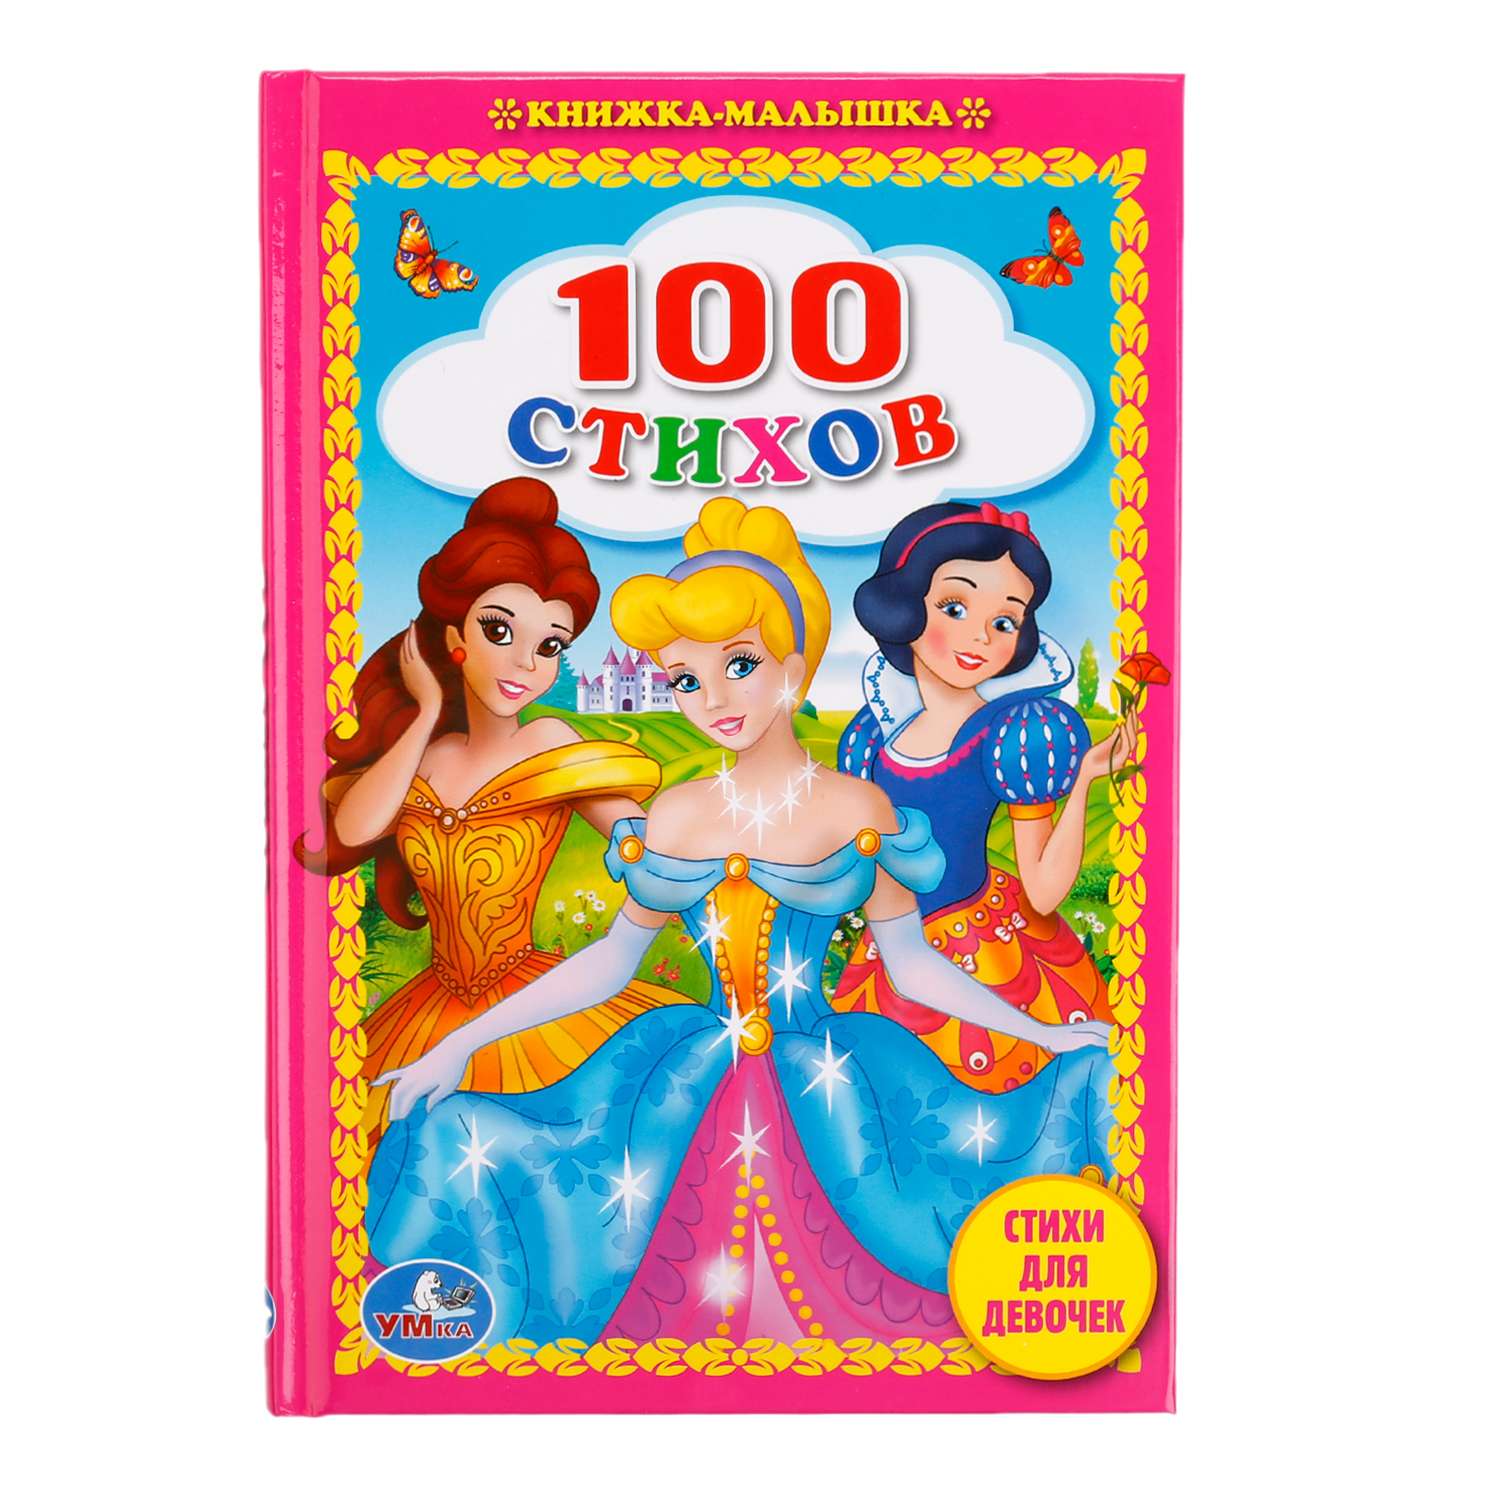 Книга Умка 100 Стихов для девочек - фото 1